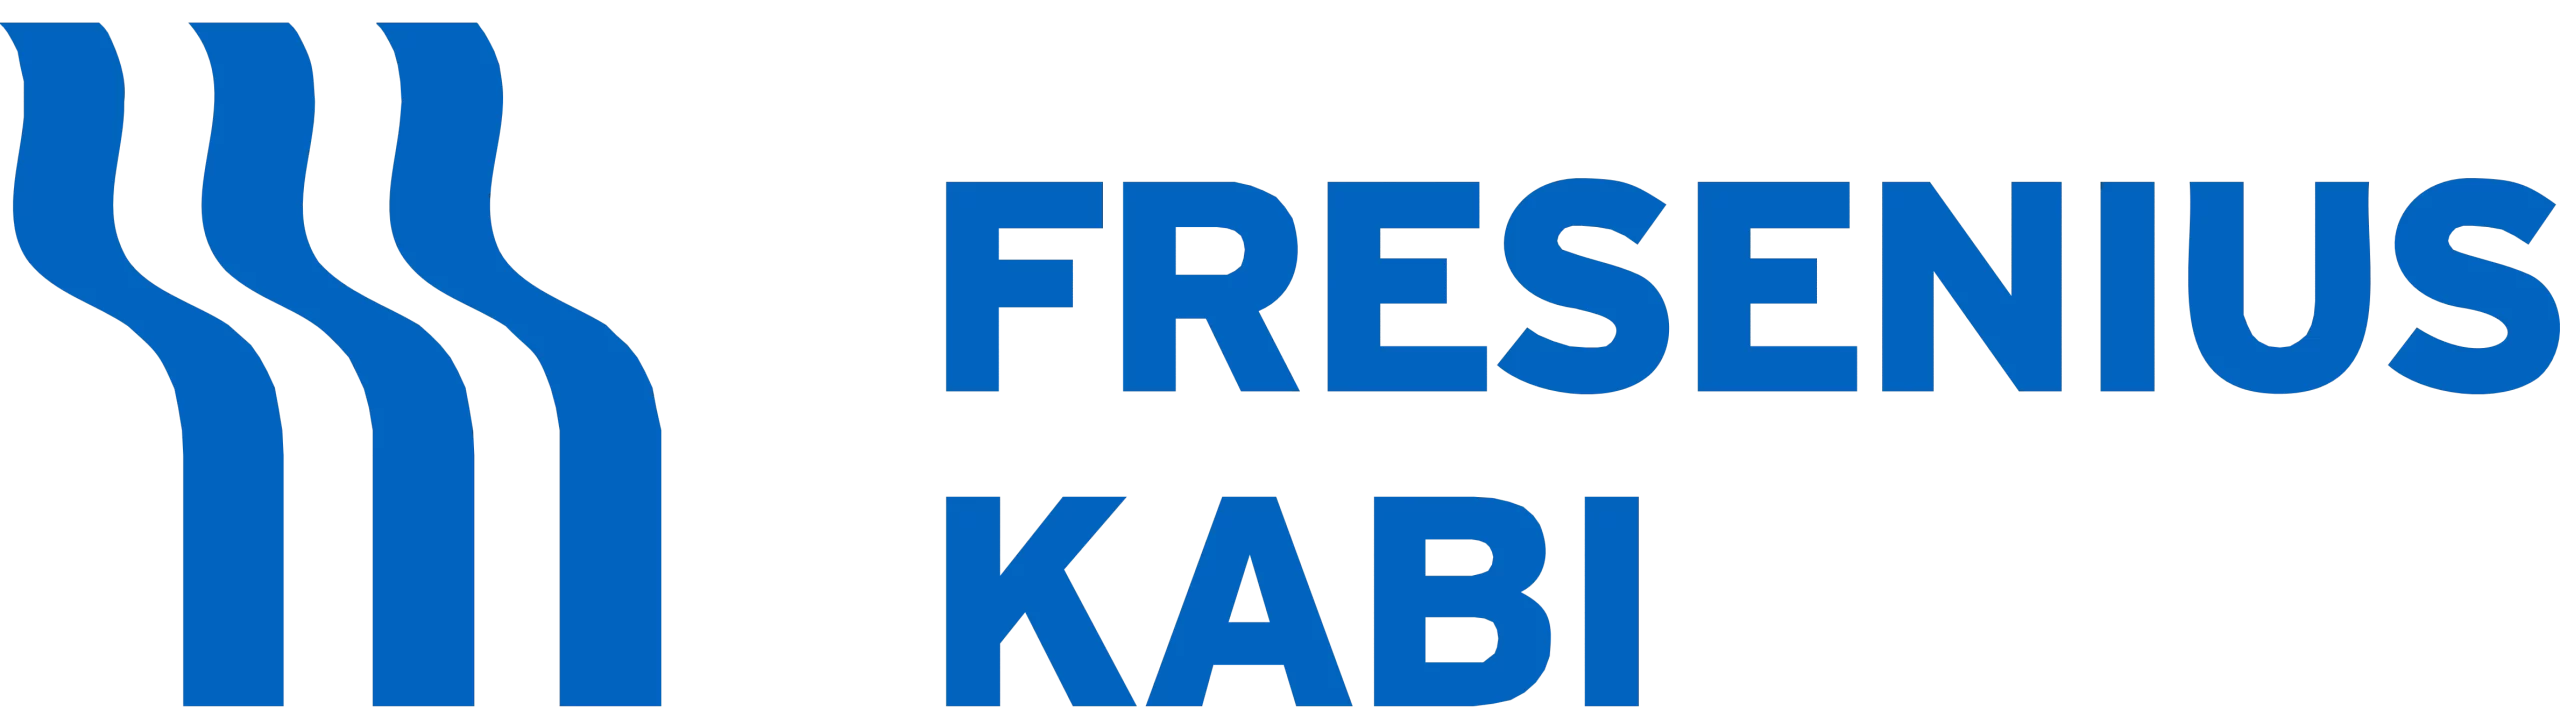 Fresenius Kabi logo image